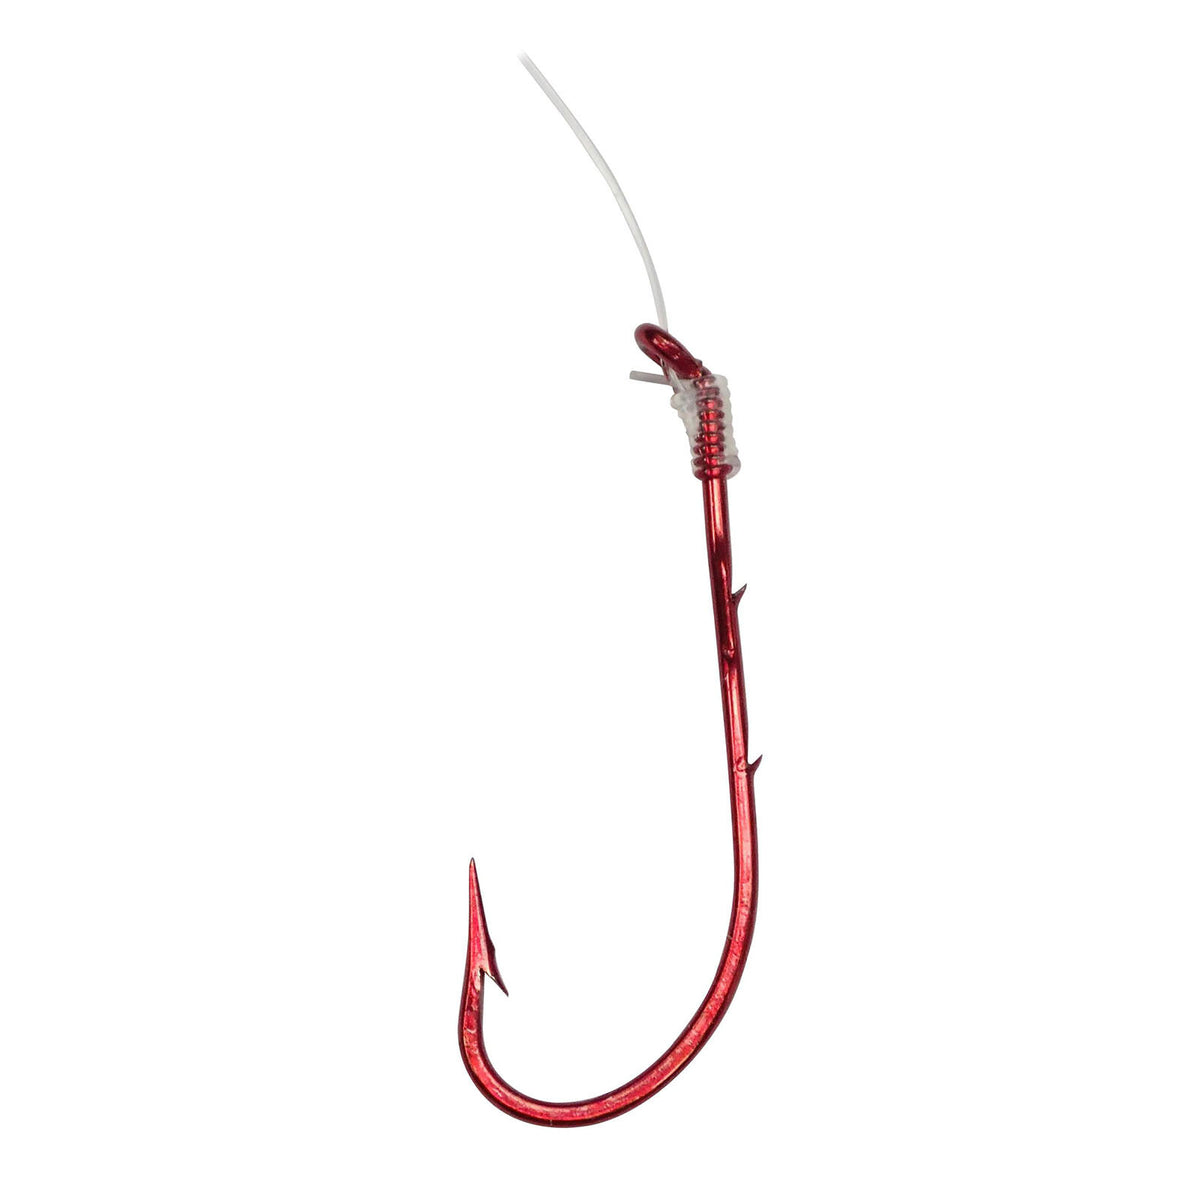 Tru-turn Snelled Bait Holder Red Hooks #303G 5 pack – Outdoorsmen Pro Shop